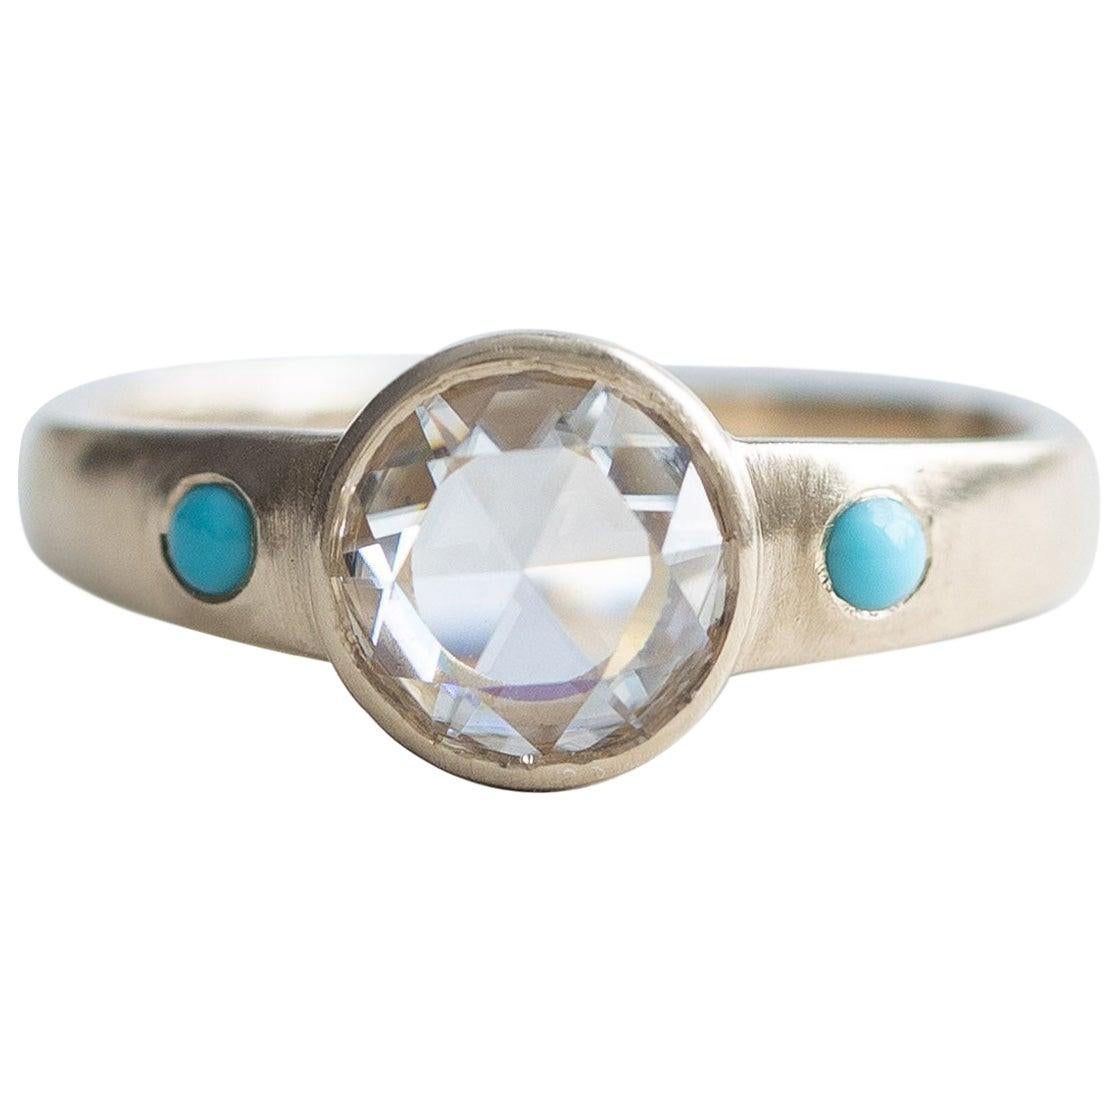 14 Karat Rose Cut Diamond Ring, Turquoise Ring, Yellow Gold Ring, Boho Ring